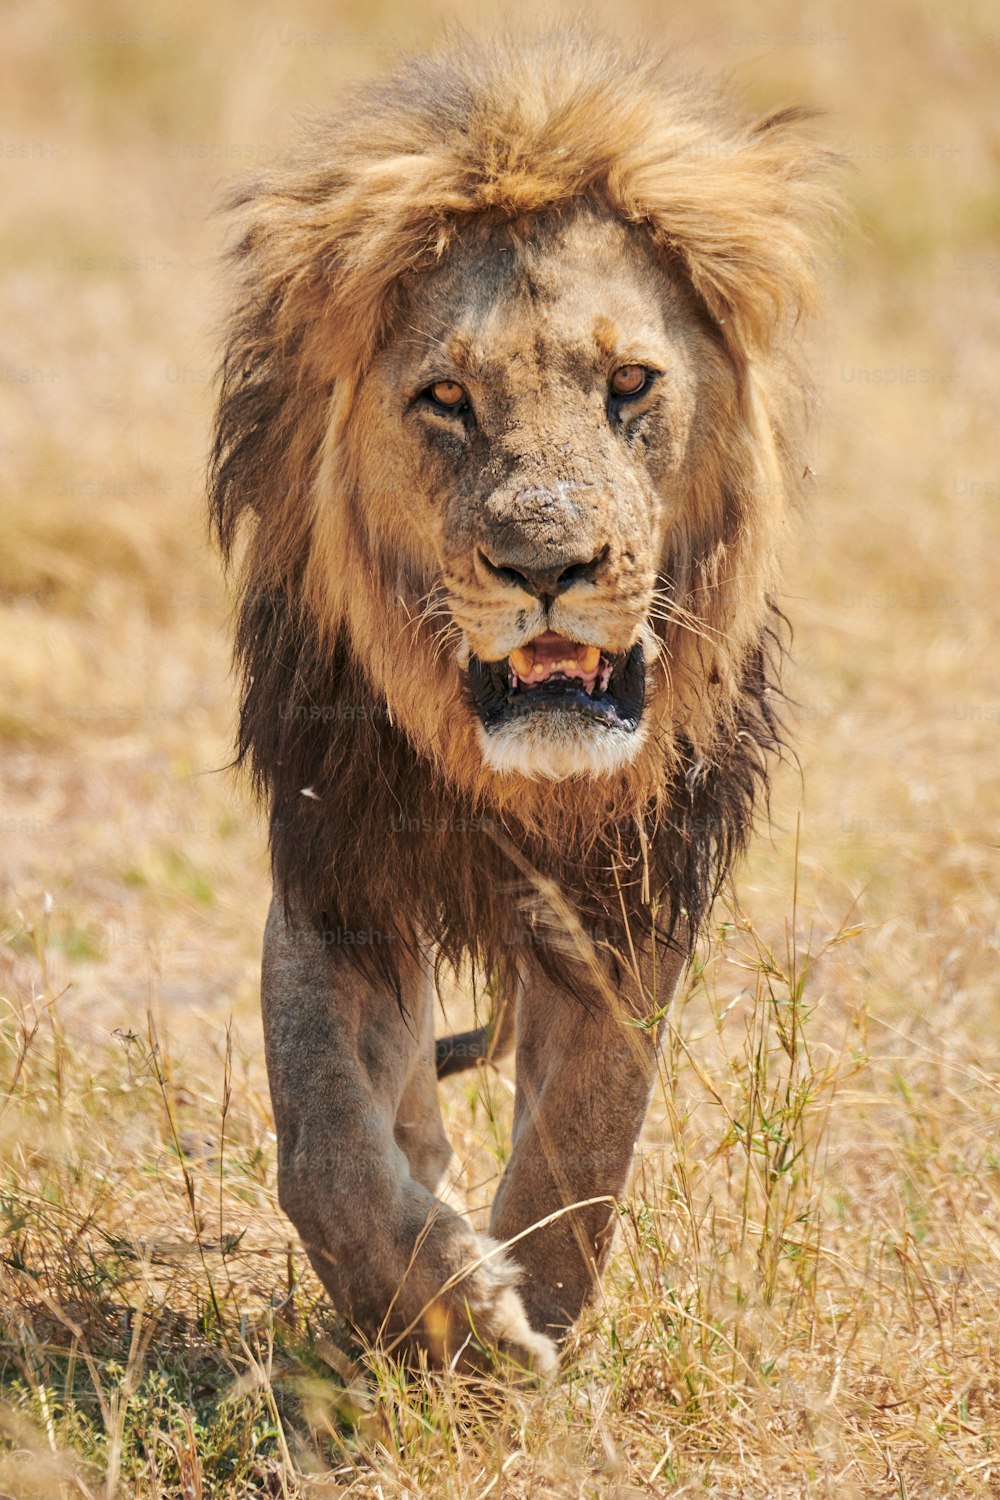 Schöner und riesiger männlicher Löwe (Panthera leo), ein echter König, der majestätisch im wilden afrikanischen Busch spazieren geht.